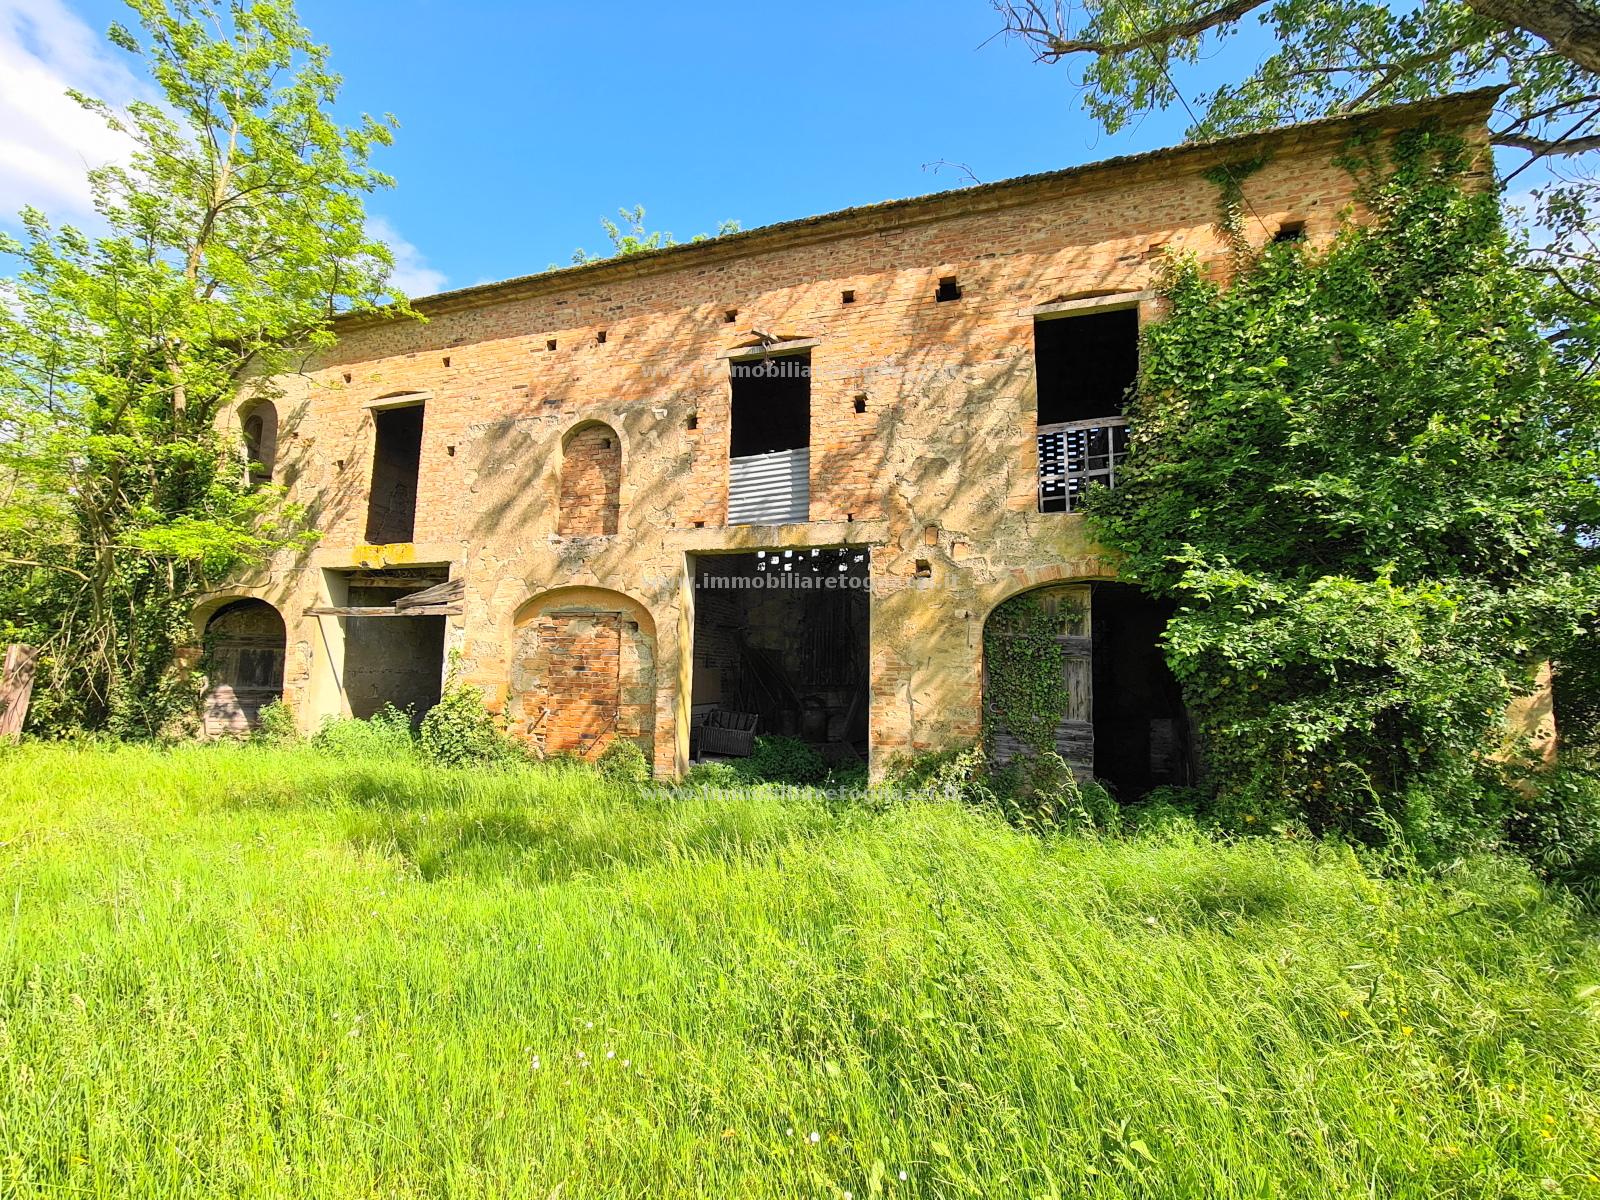 Rustico / Casale in vendita a Castelfiorentino, 8 locali, prezzo € 115.000 | PortaleAgenzieImmobiliari.it